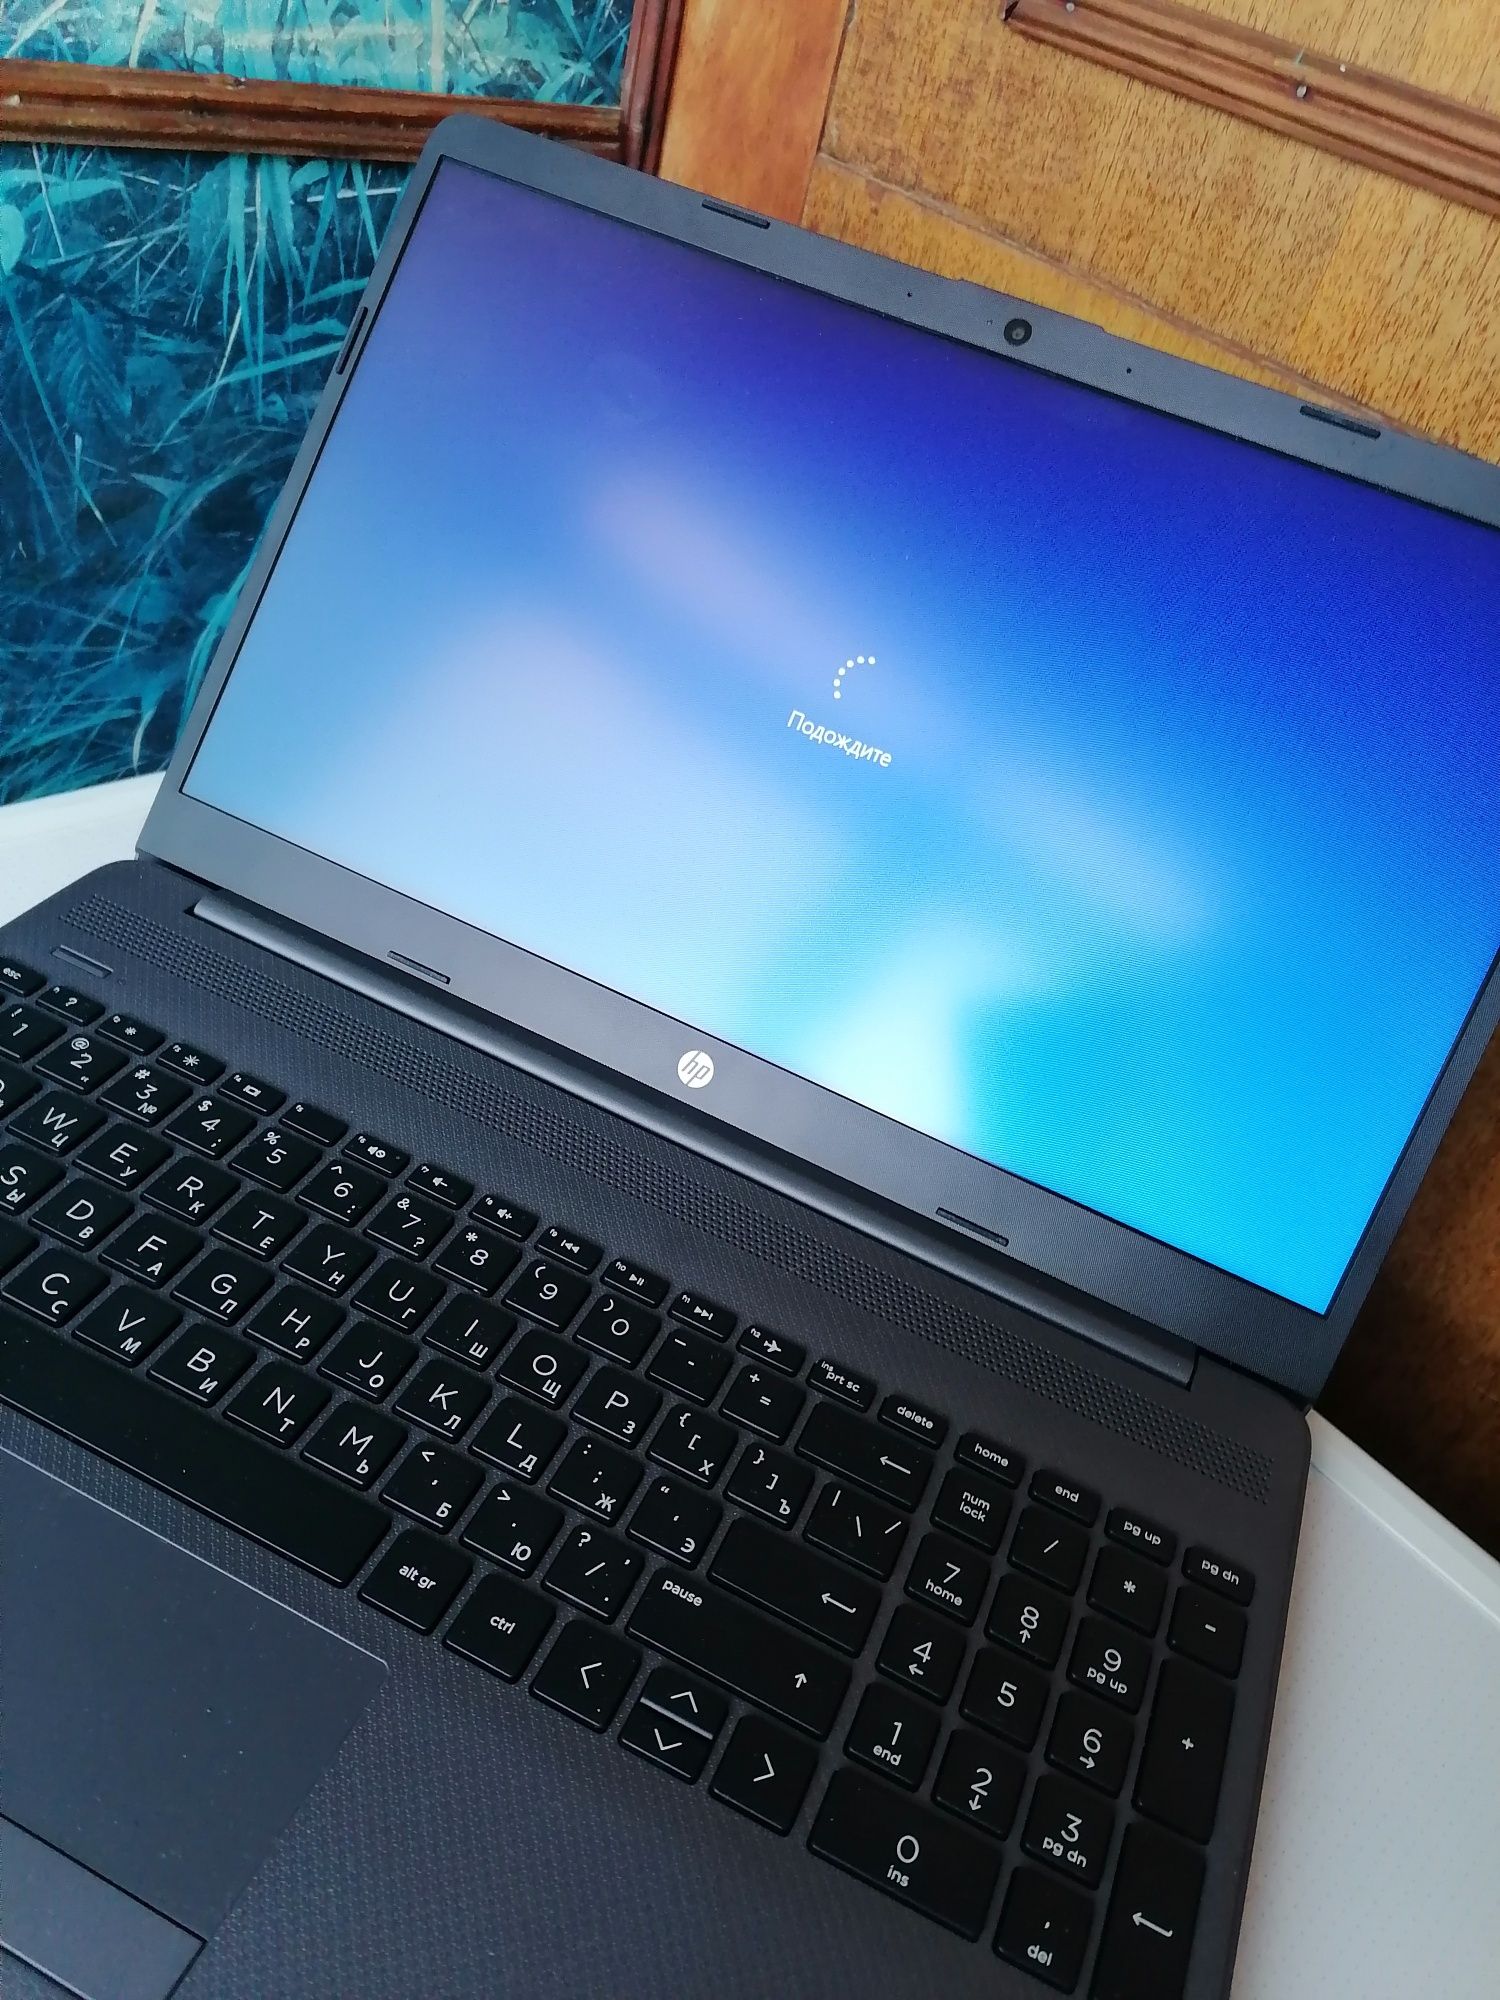 Продам ноутбук Продам Ноутбук HP 250 G8 Model: RTL 8821 CE